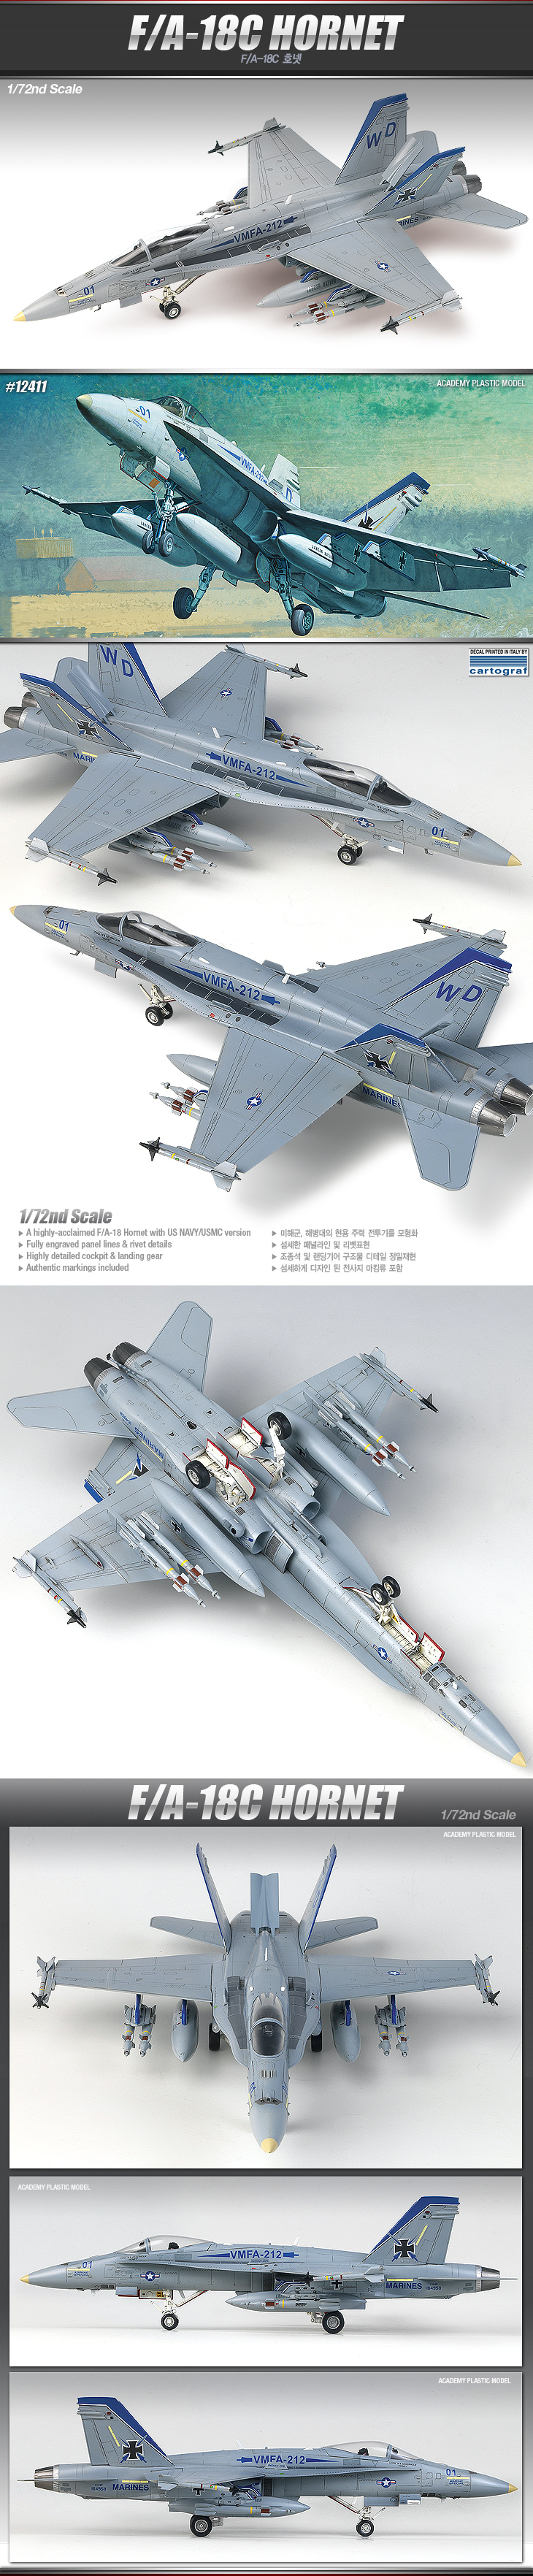 FA-18C_HORNET_main_200435.jpg